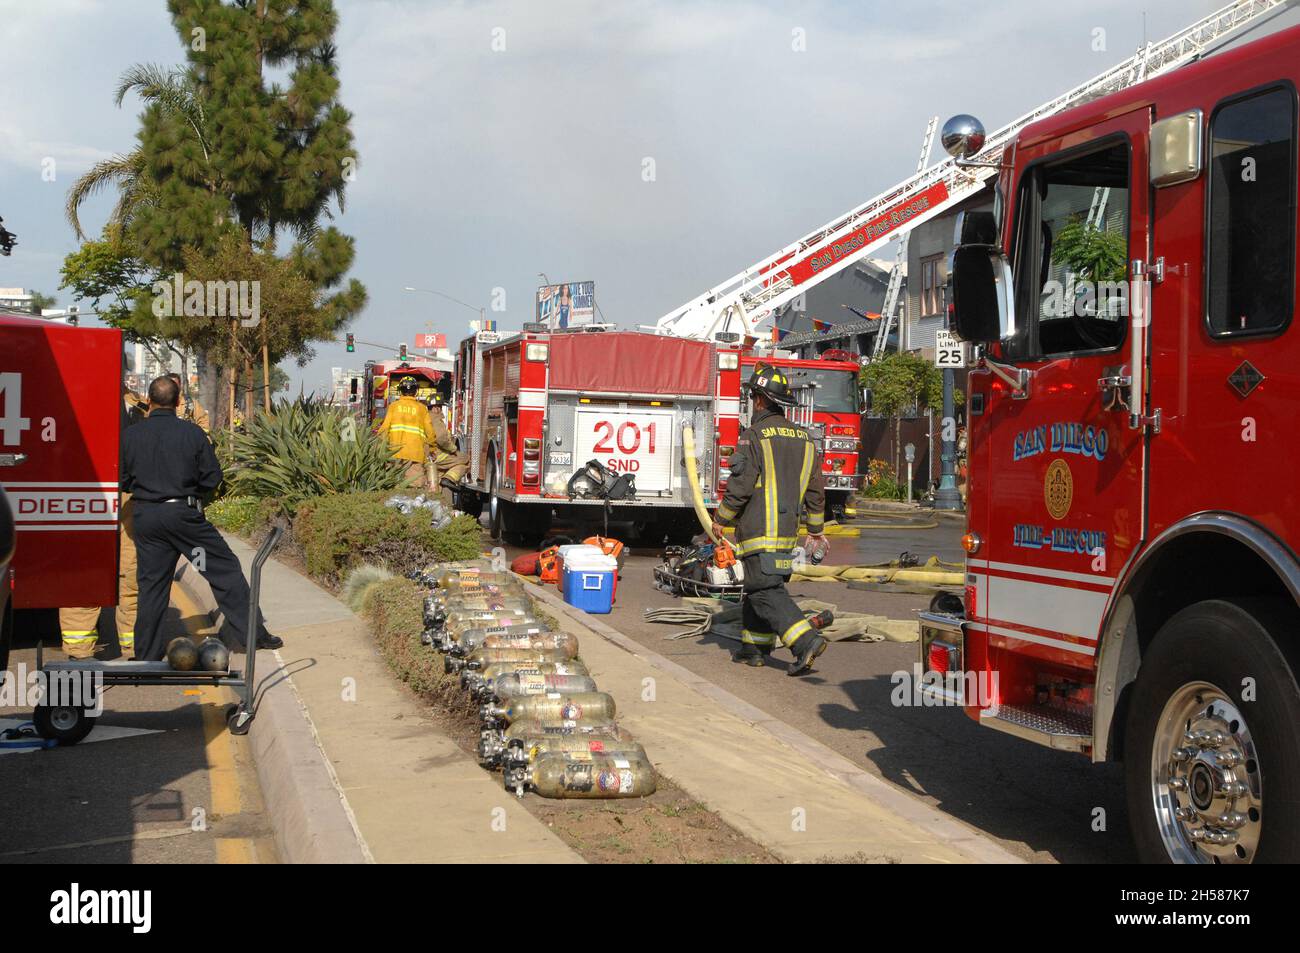 Les bouteilles d'air sont alignées pour être utilisées lors d'un incendie de structure à San Diego, Californie, sous le contrôle de San Diego Fire Rescue. Banque D'Images